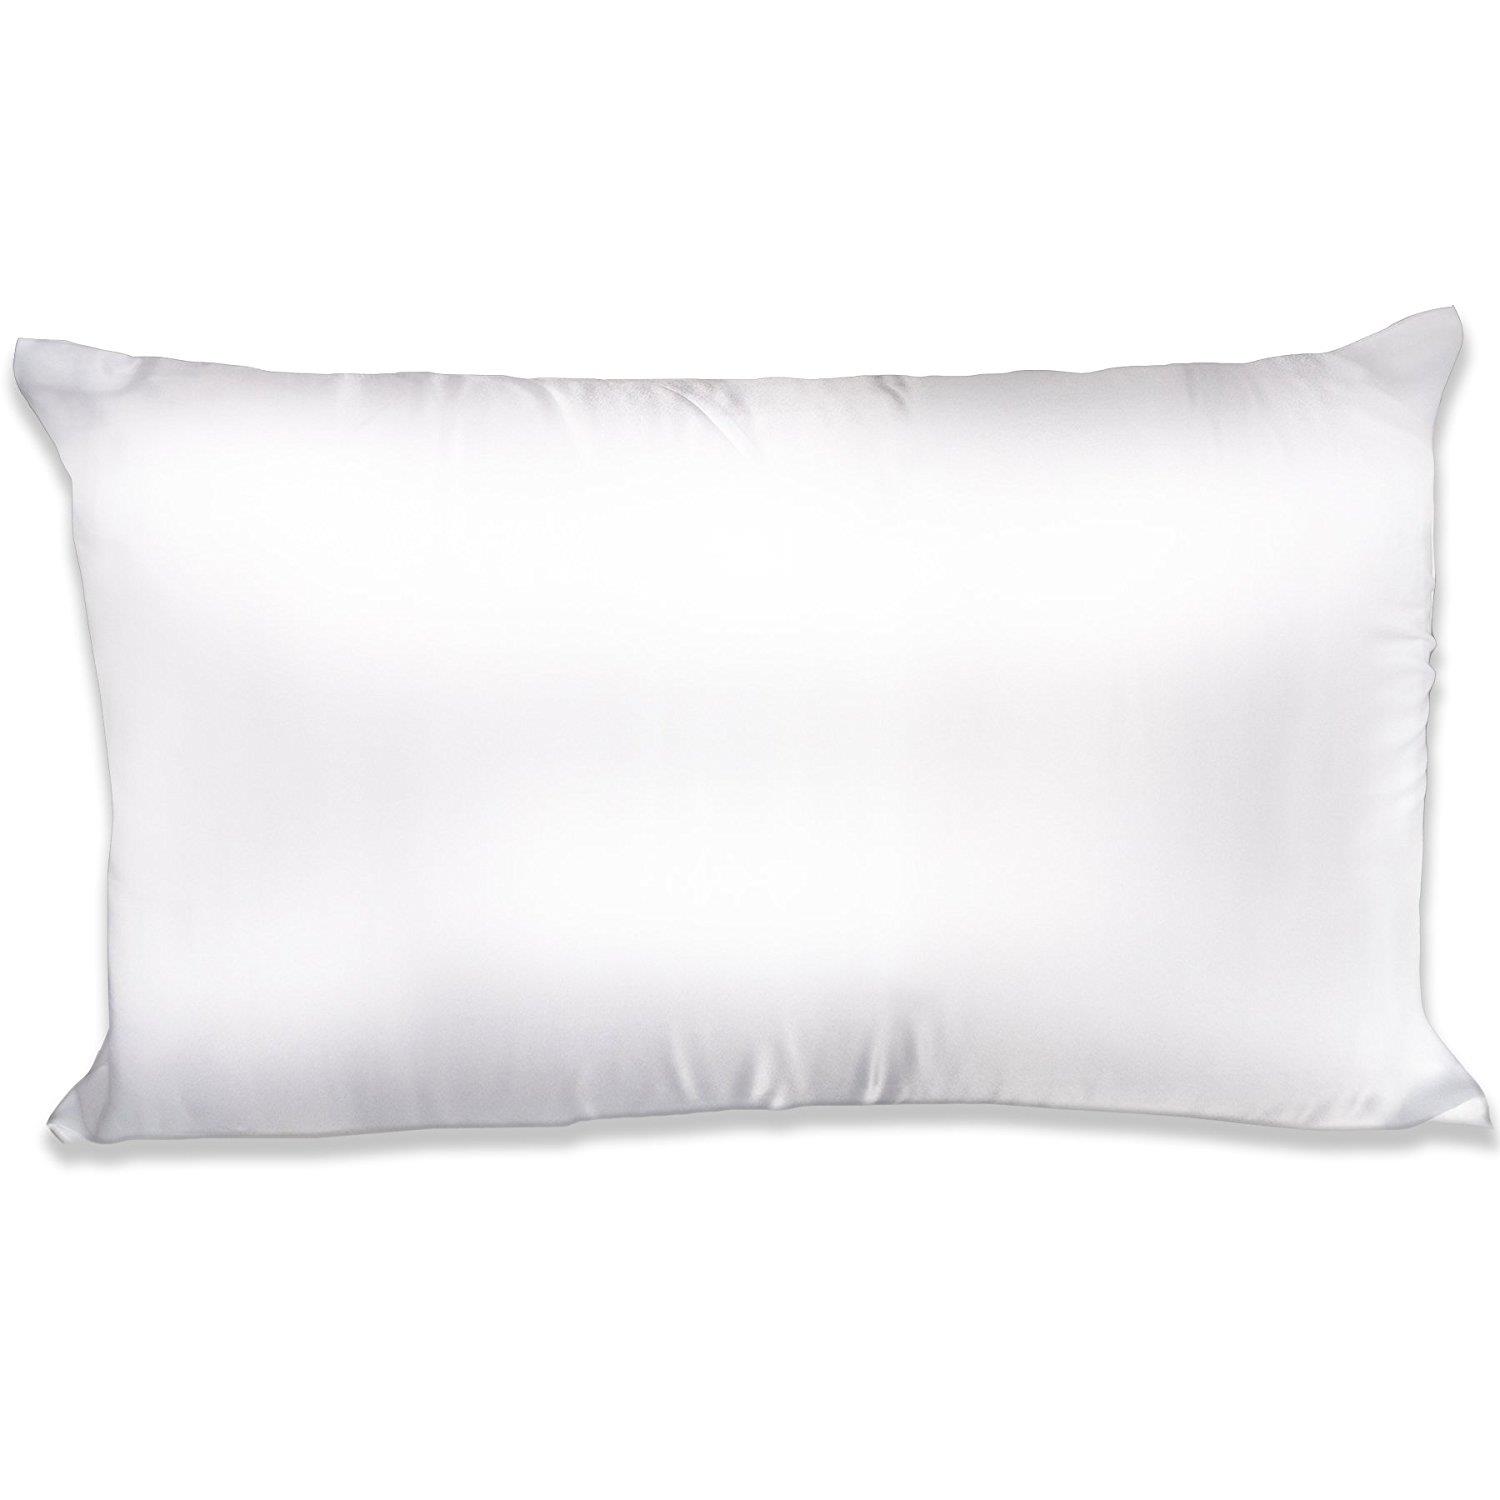 THXSILK color blanco 40 x 60 22 Momme Fundas de almohada de seda con cremallera natural de morera funda de almohada para el cabello y la piel 